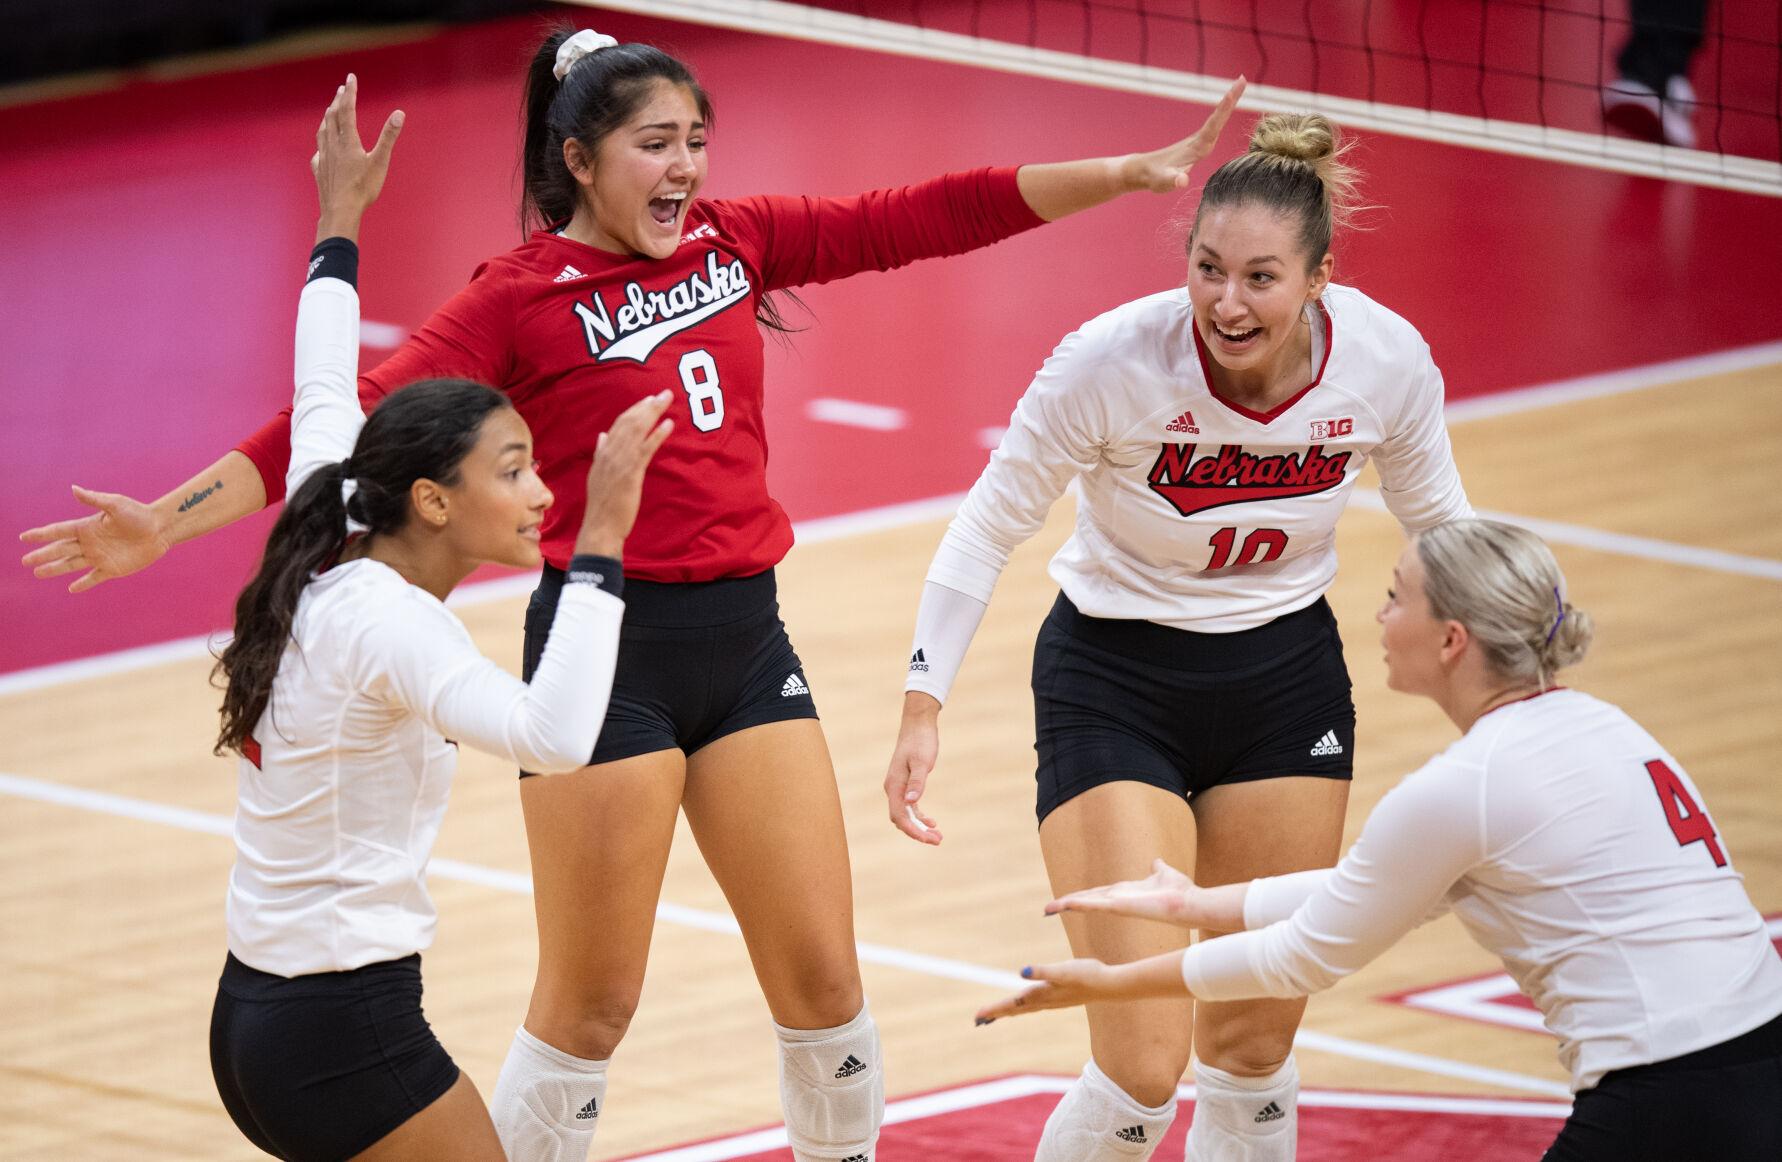 Photos: No. 2 Nebraska, No. 9 Stanford meet in volleyball showdown